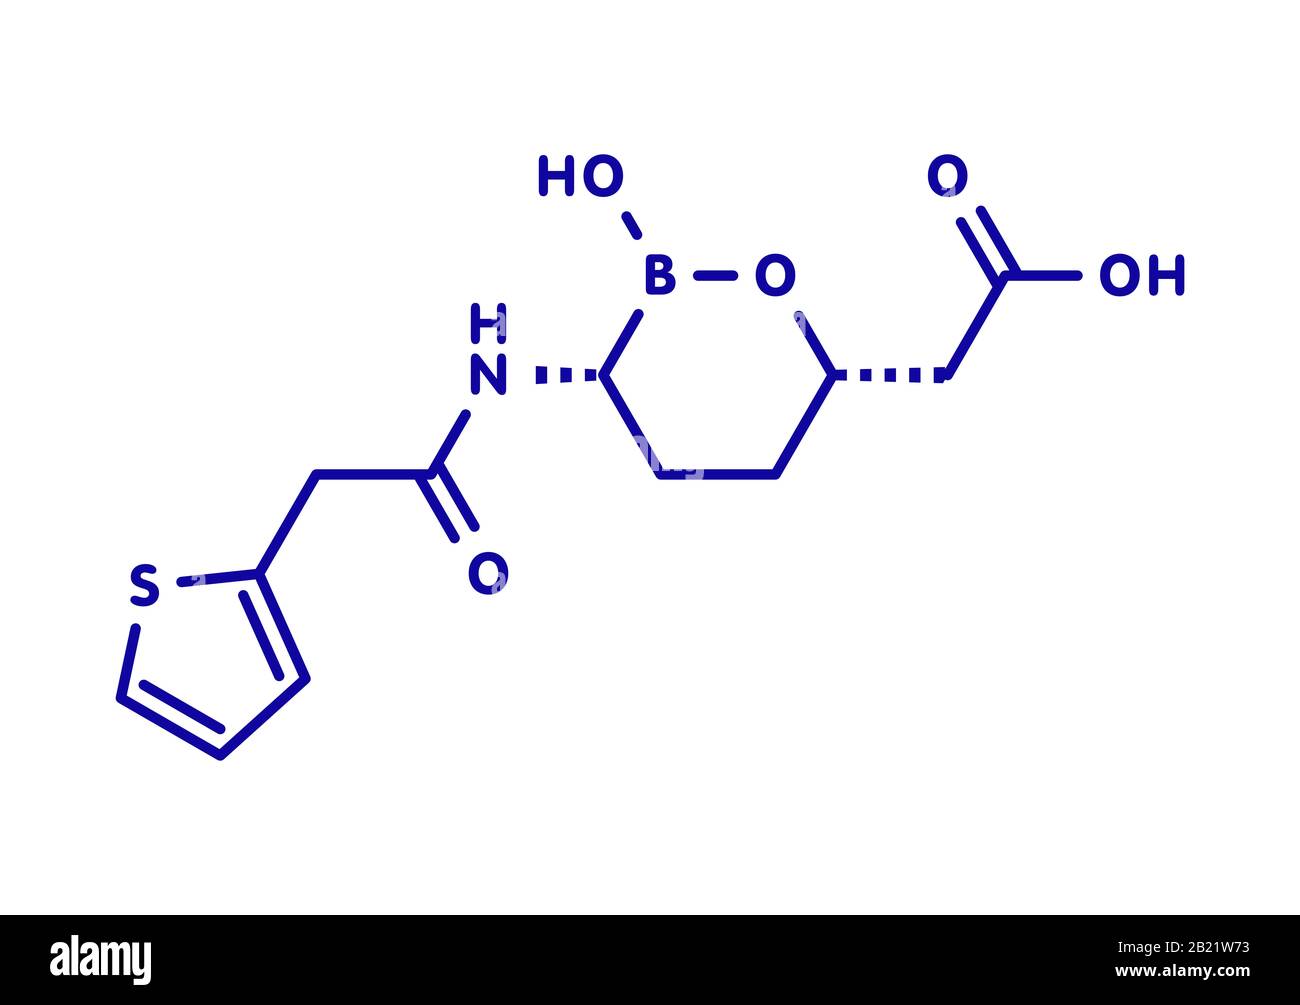 Molécule de médicament Vaborbactam, illustration Banque D'Images